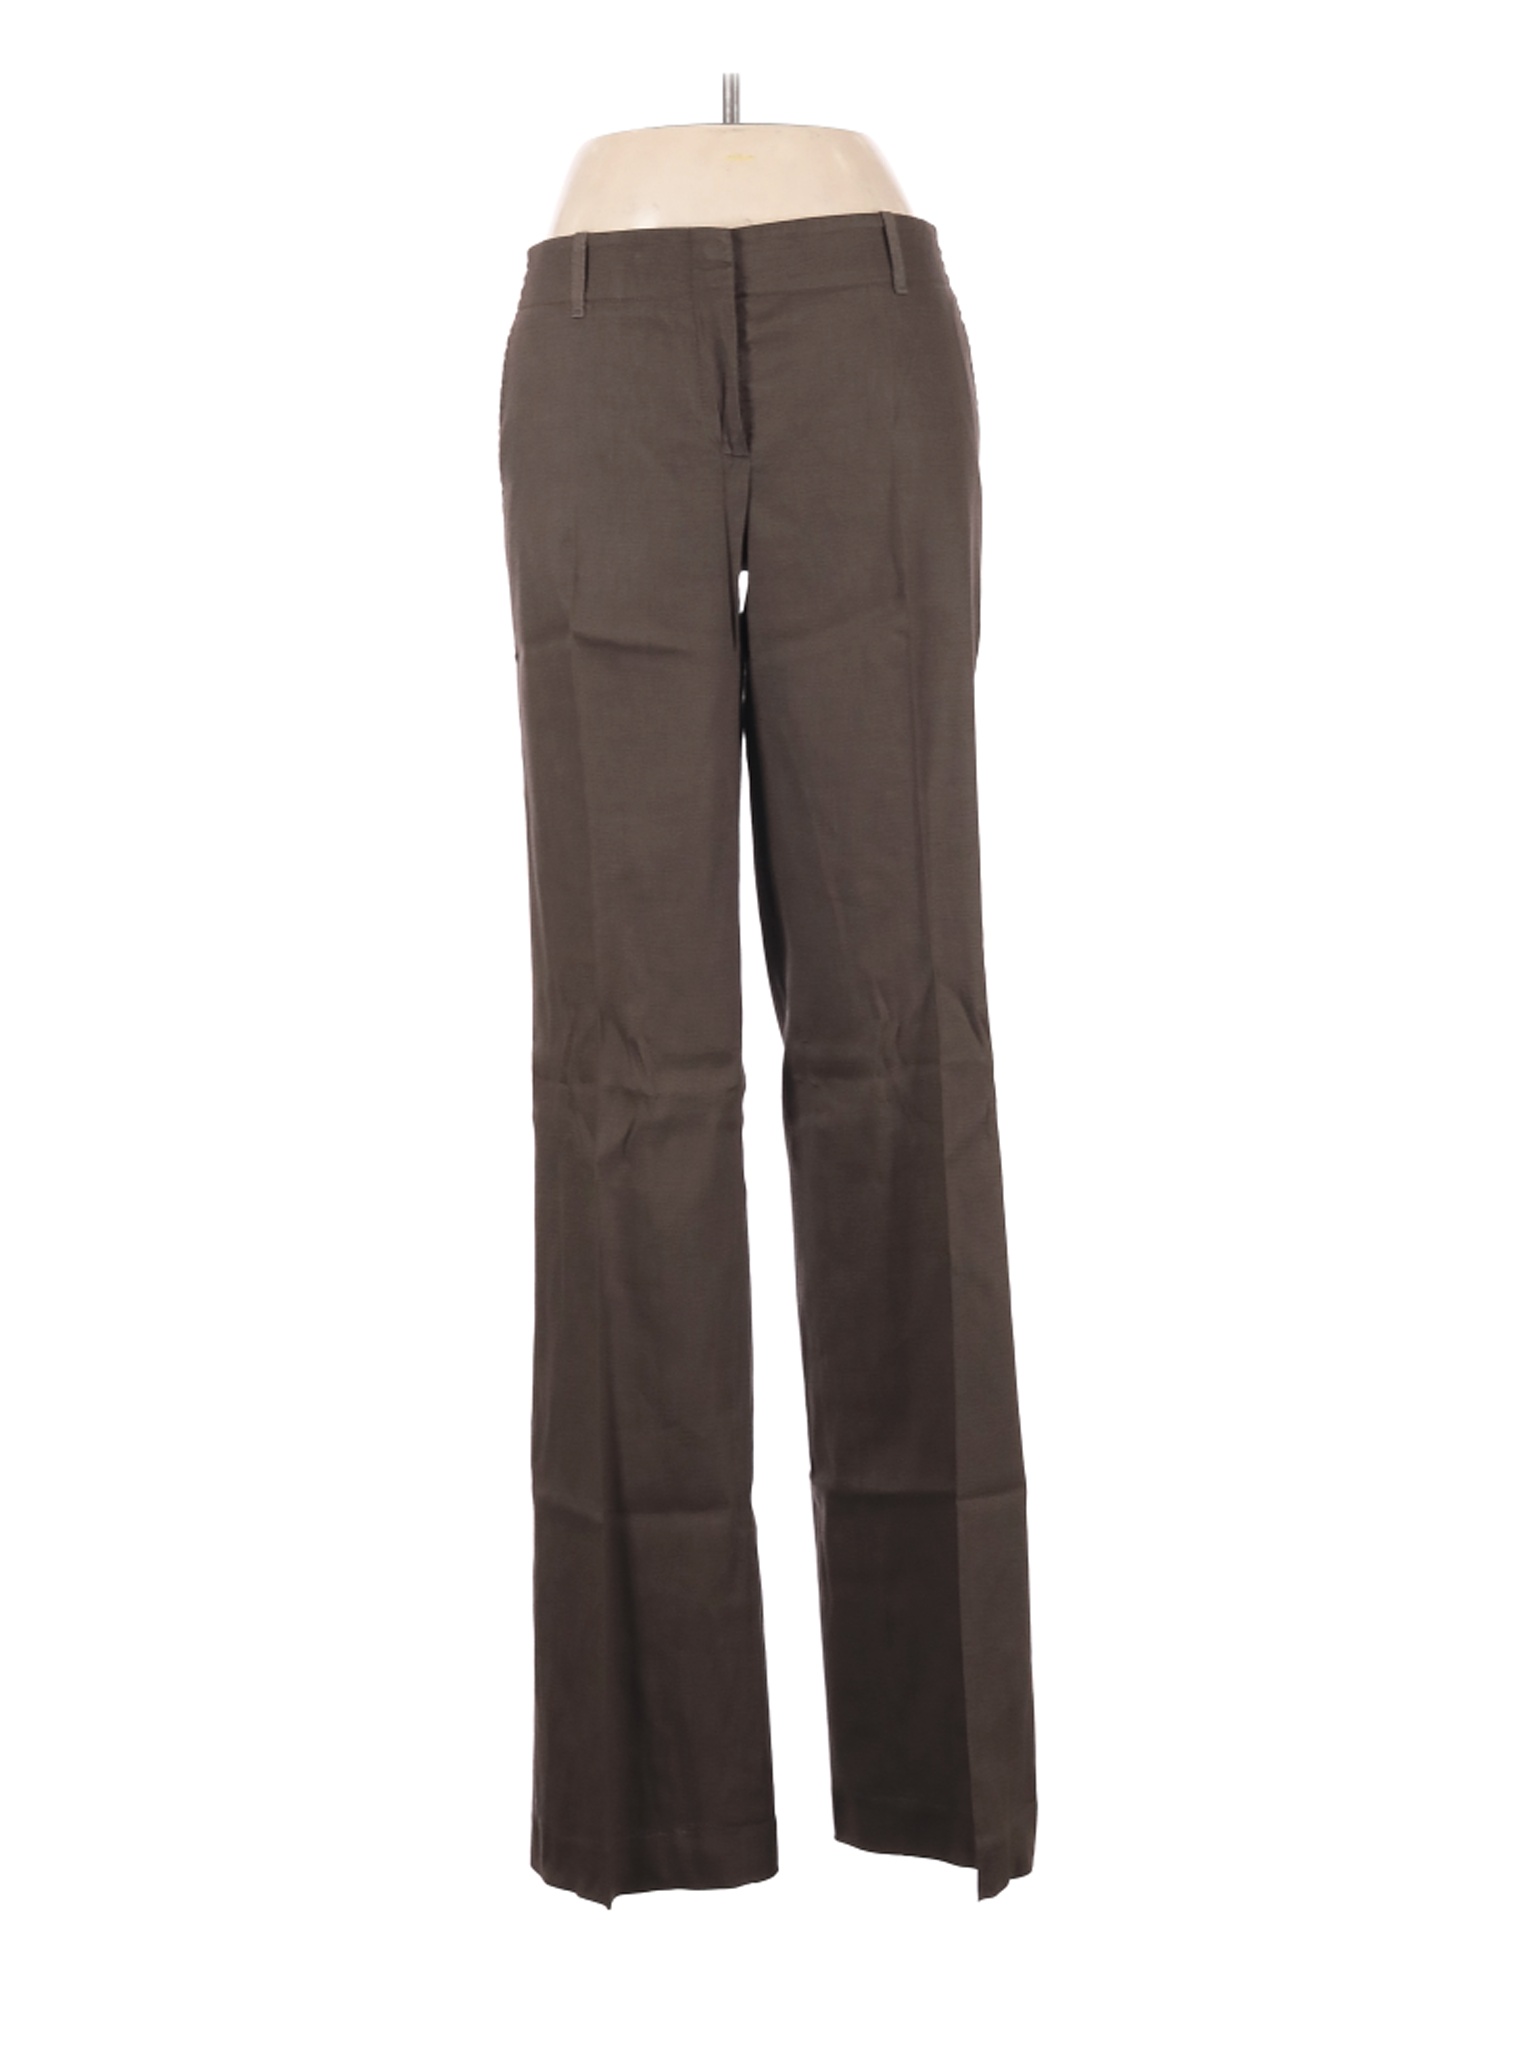 Elie Tahari Women Brown Linen Pants 8 | eBay